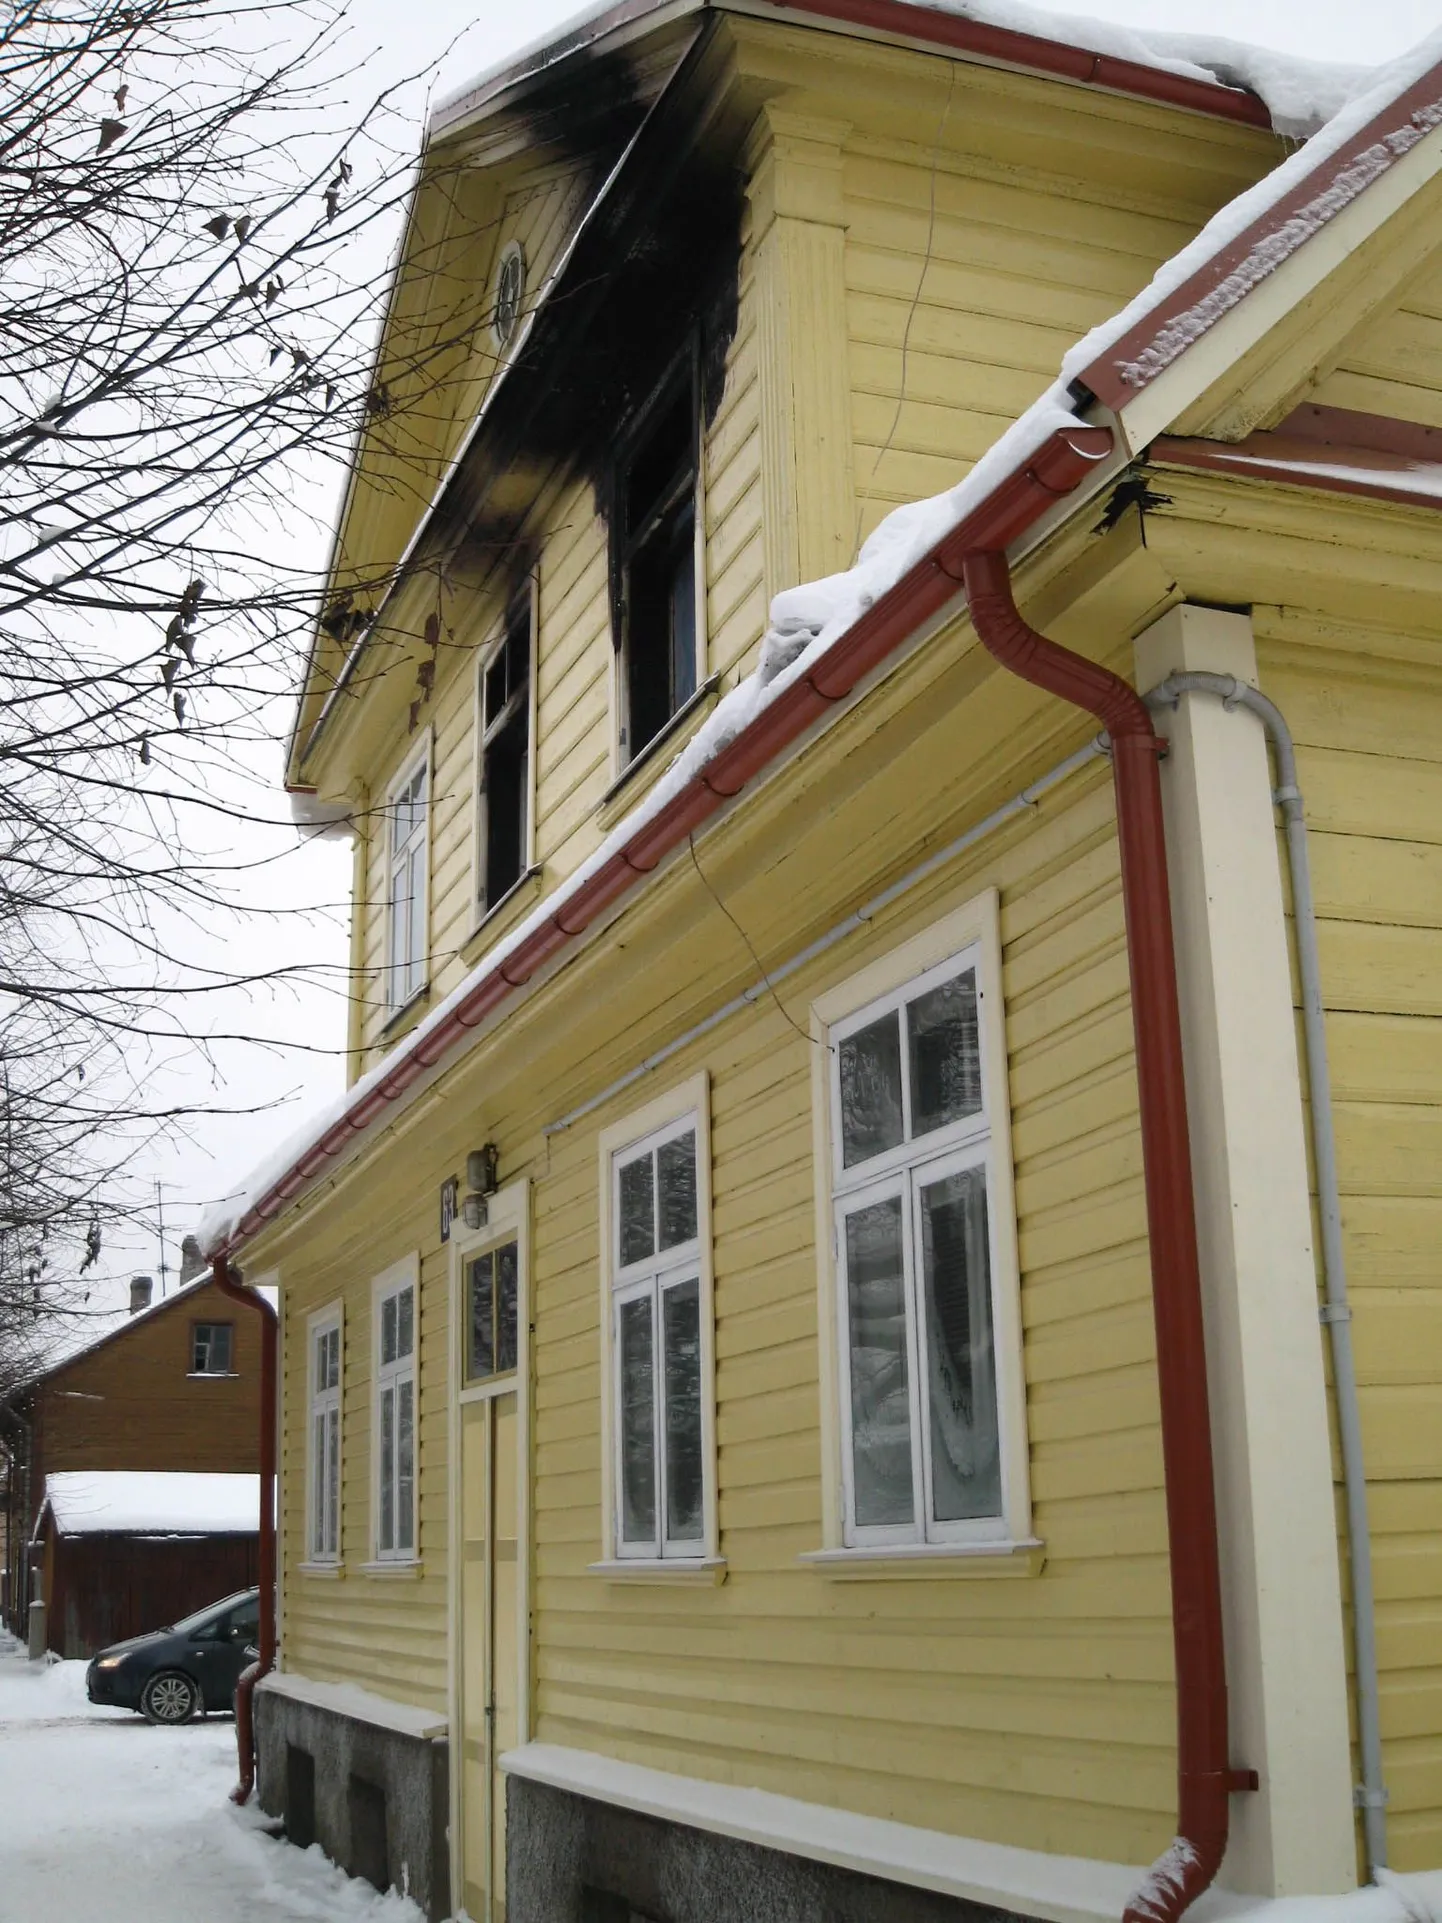 Tartus Puiestee 63 põlenud korterist pääsesid kolm naisterahvast õnneks eluga. Nüüd tuleb aga elamispind uuesti üles ehitada.